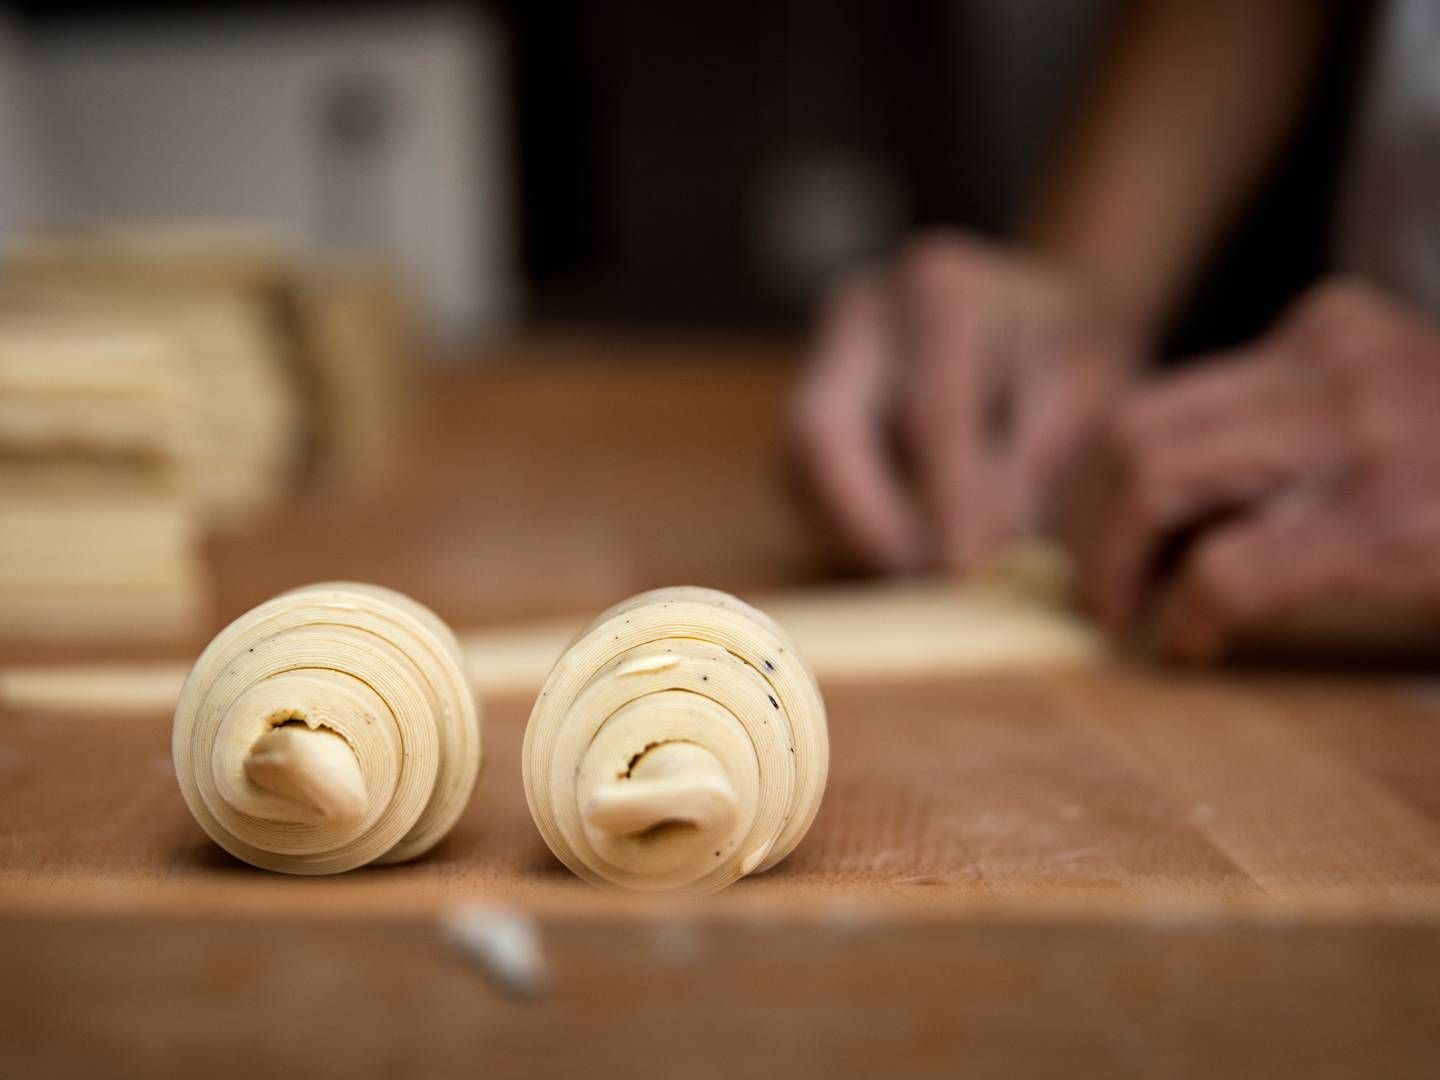 Bagerimarkedet forandrer sig i disse år, hvor der først har været pres på de klassiske håndværksbagere, men også masser af udvikling mod større enheder og en underskov af gourmetbagere. | Foto: Finn Frandsen/Ritzau Scanpix.